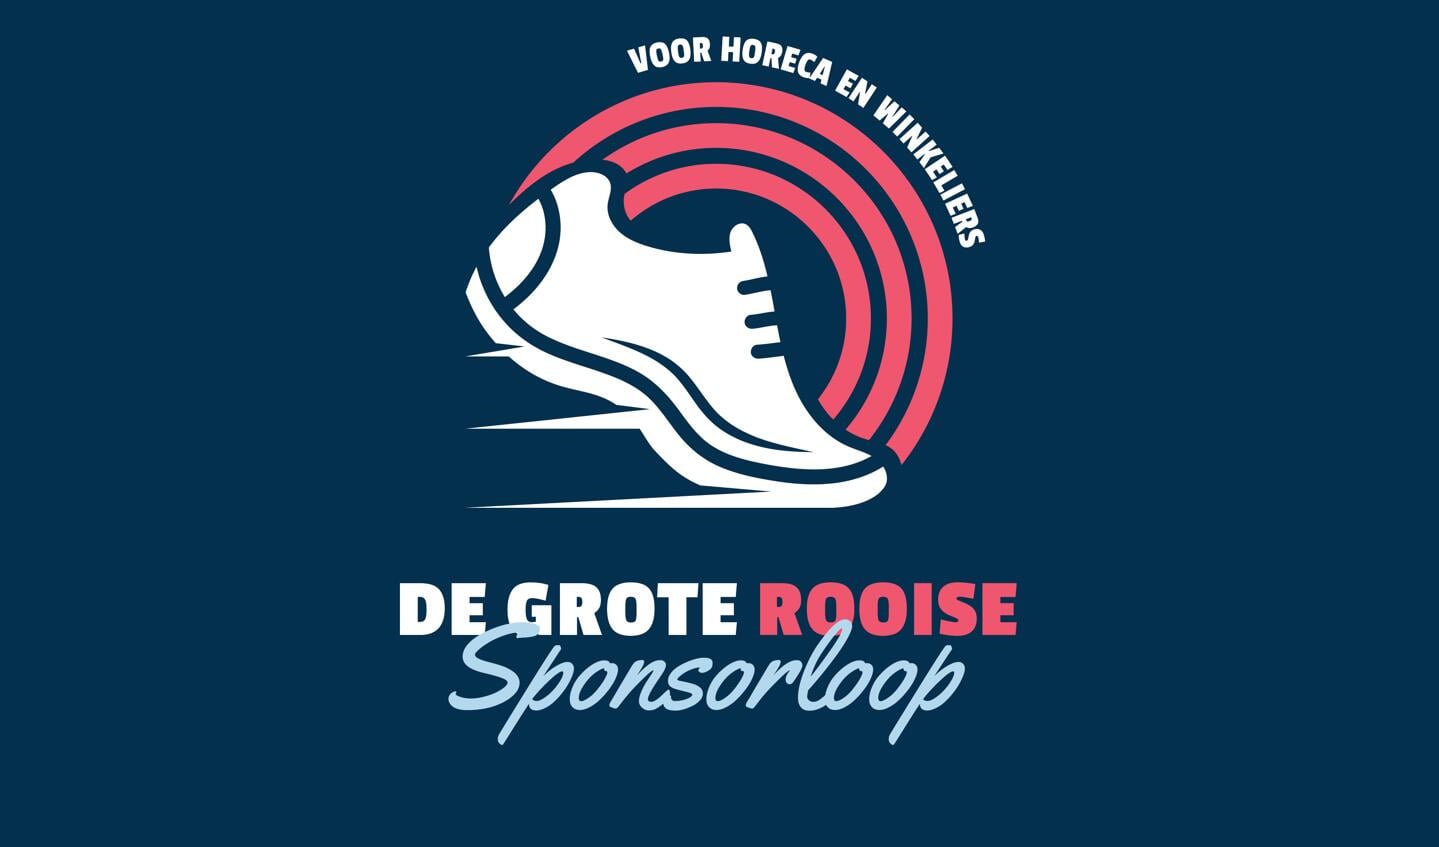 Het logo van De Grote Rooise Sponsorloop